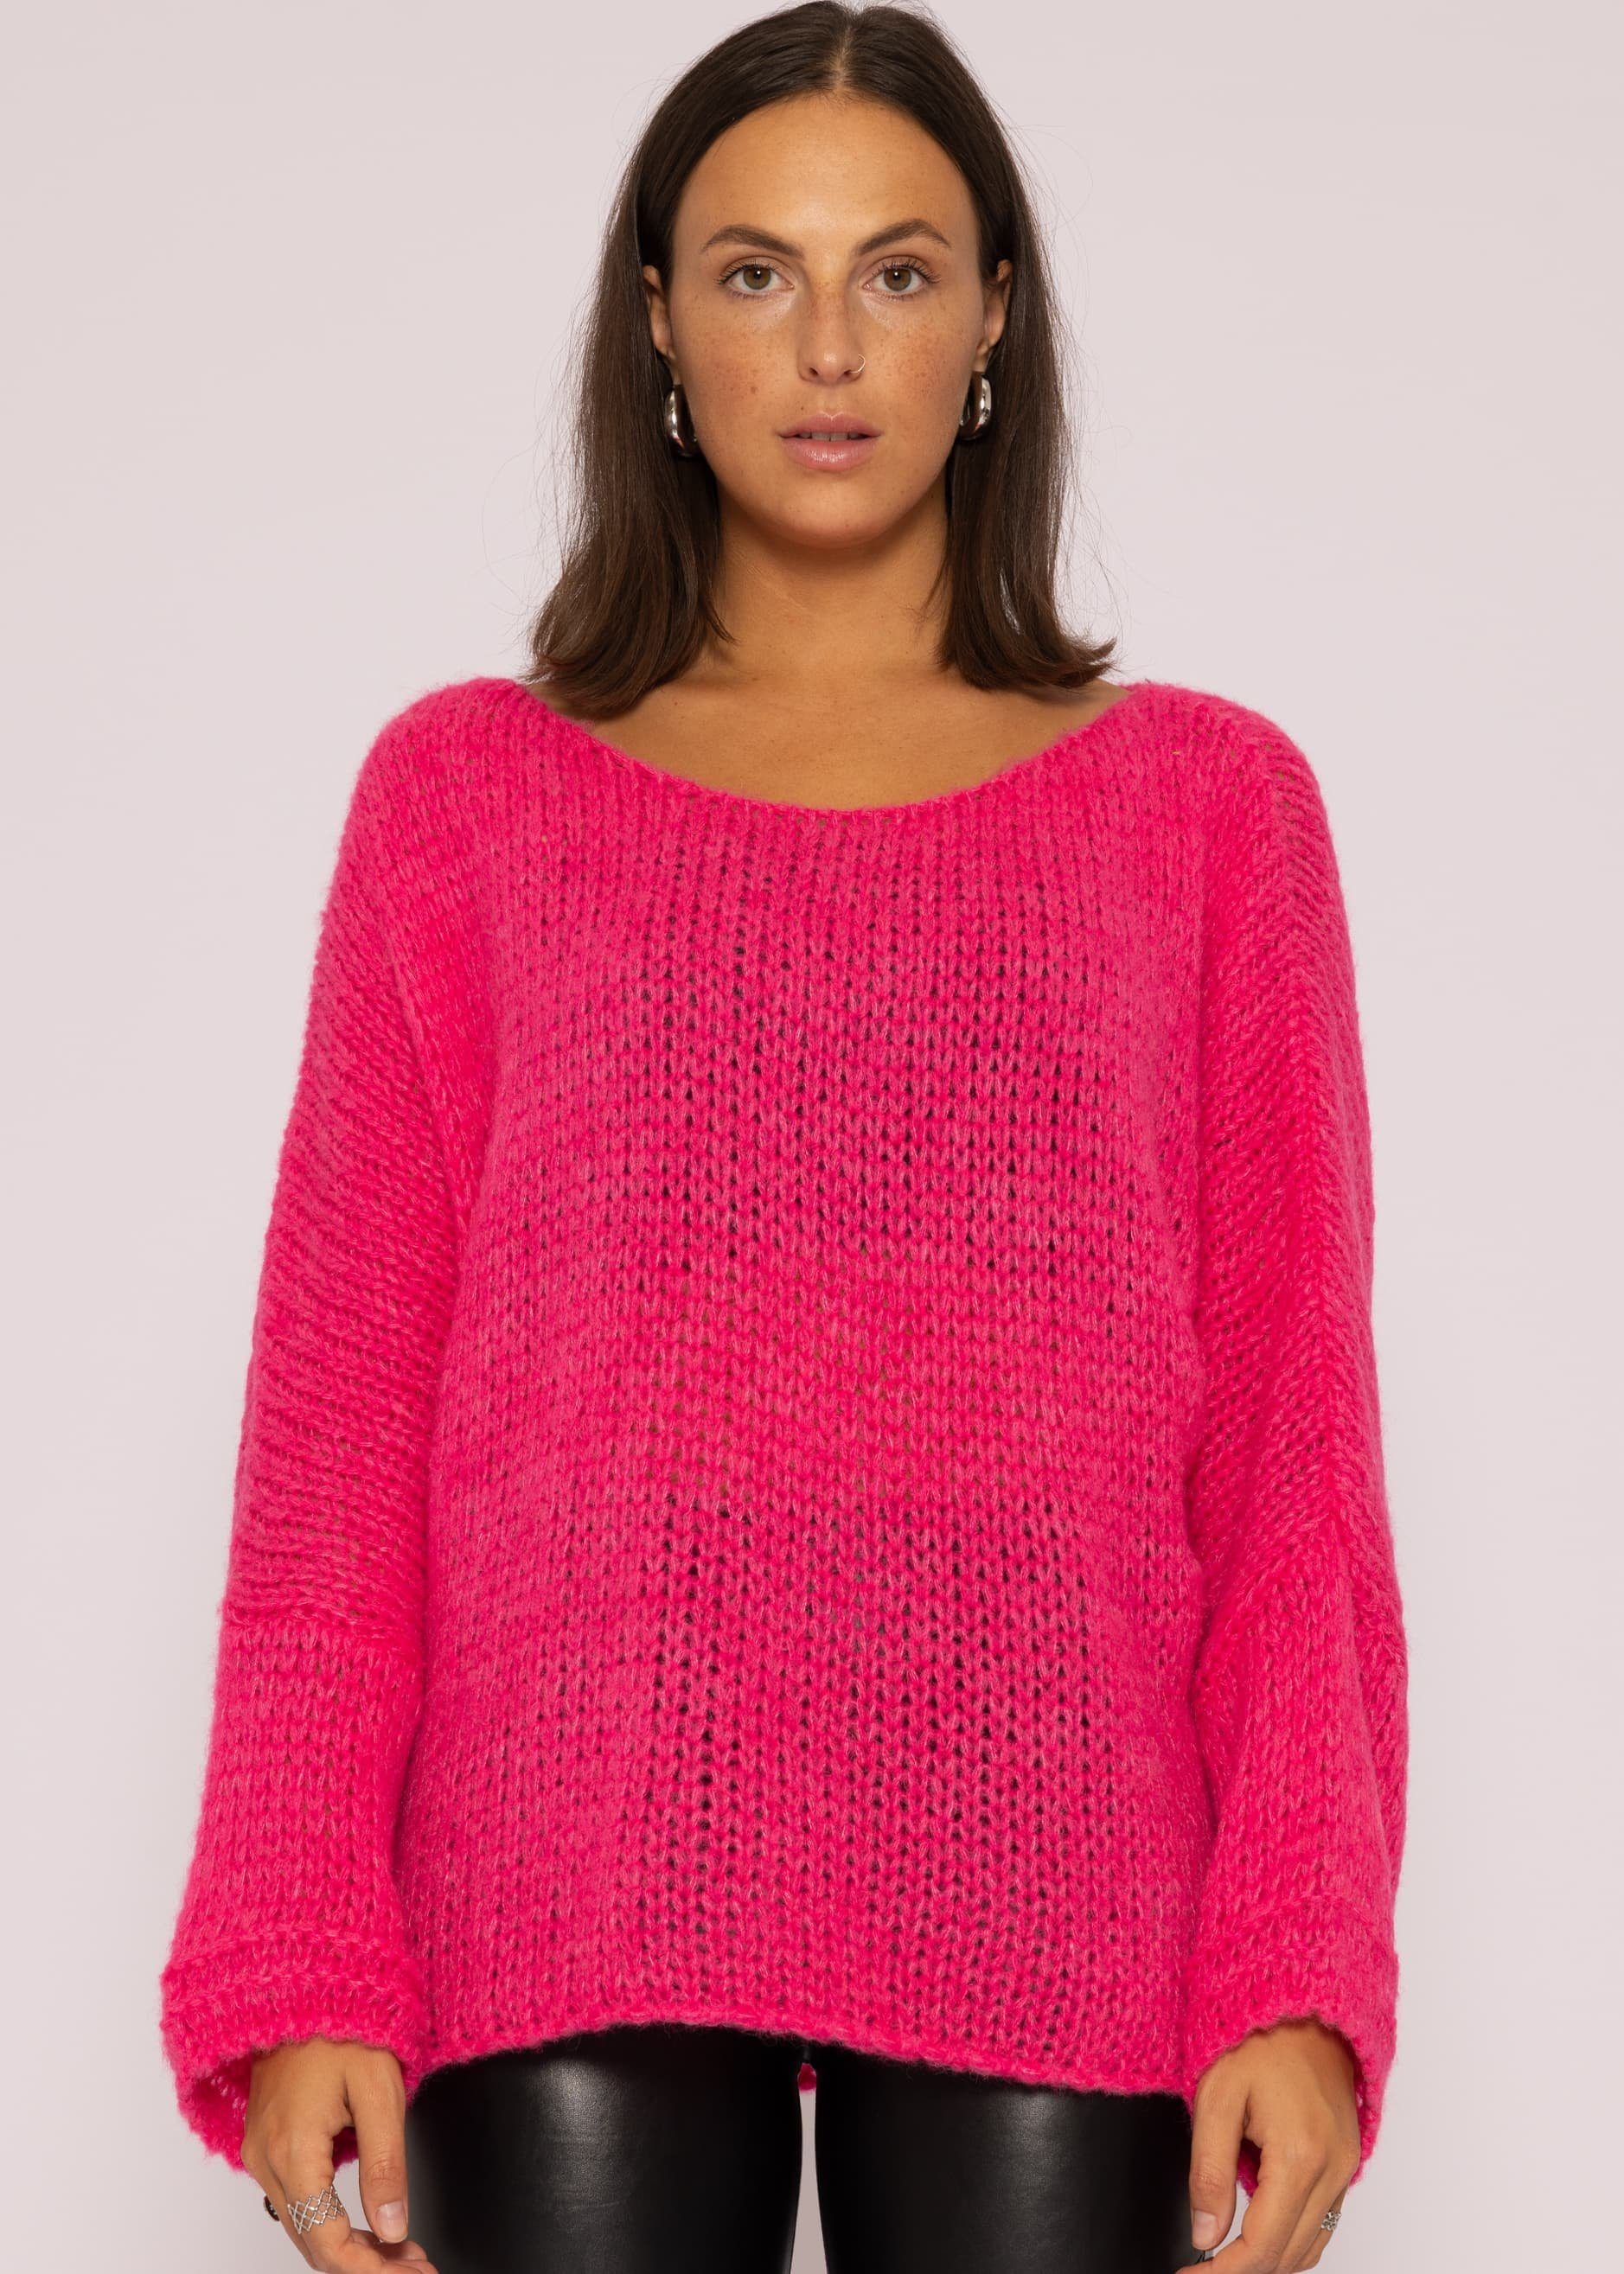 SASSYCLASSY Strickpullover Oversize Pullover Damen aus weichem Grobstrick Lässiger Strickpullover lang mit Rundhals-Ausschnitt, Made in Italy Pink